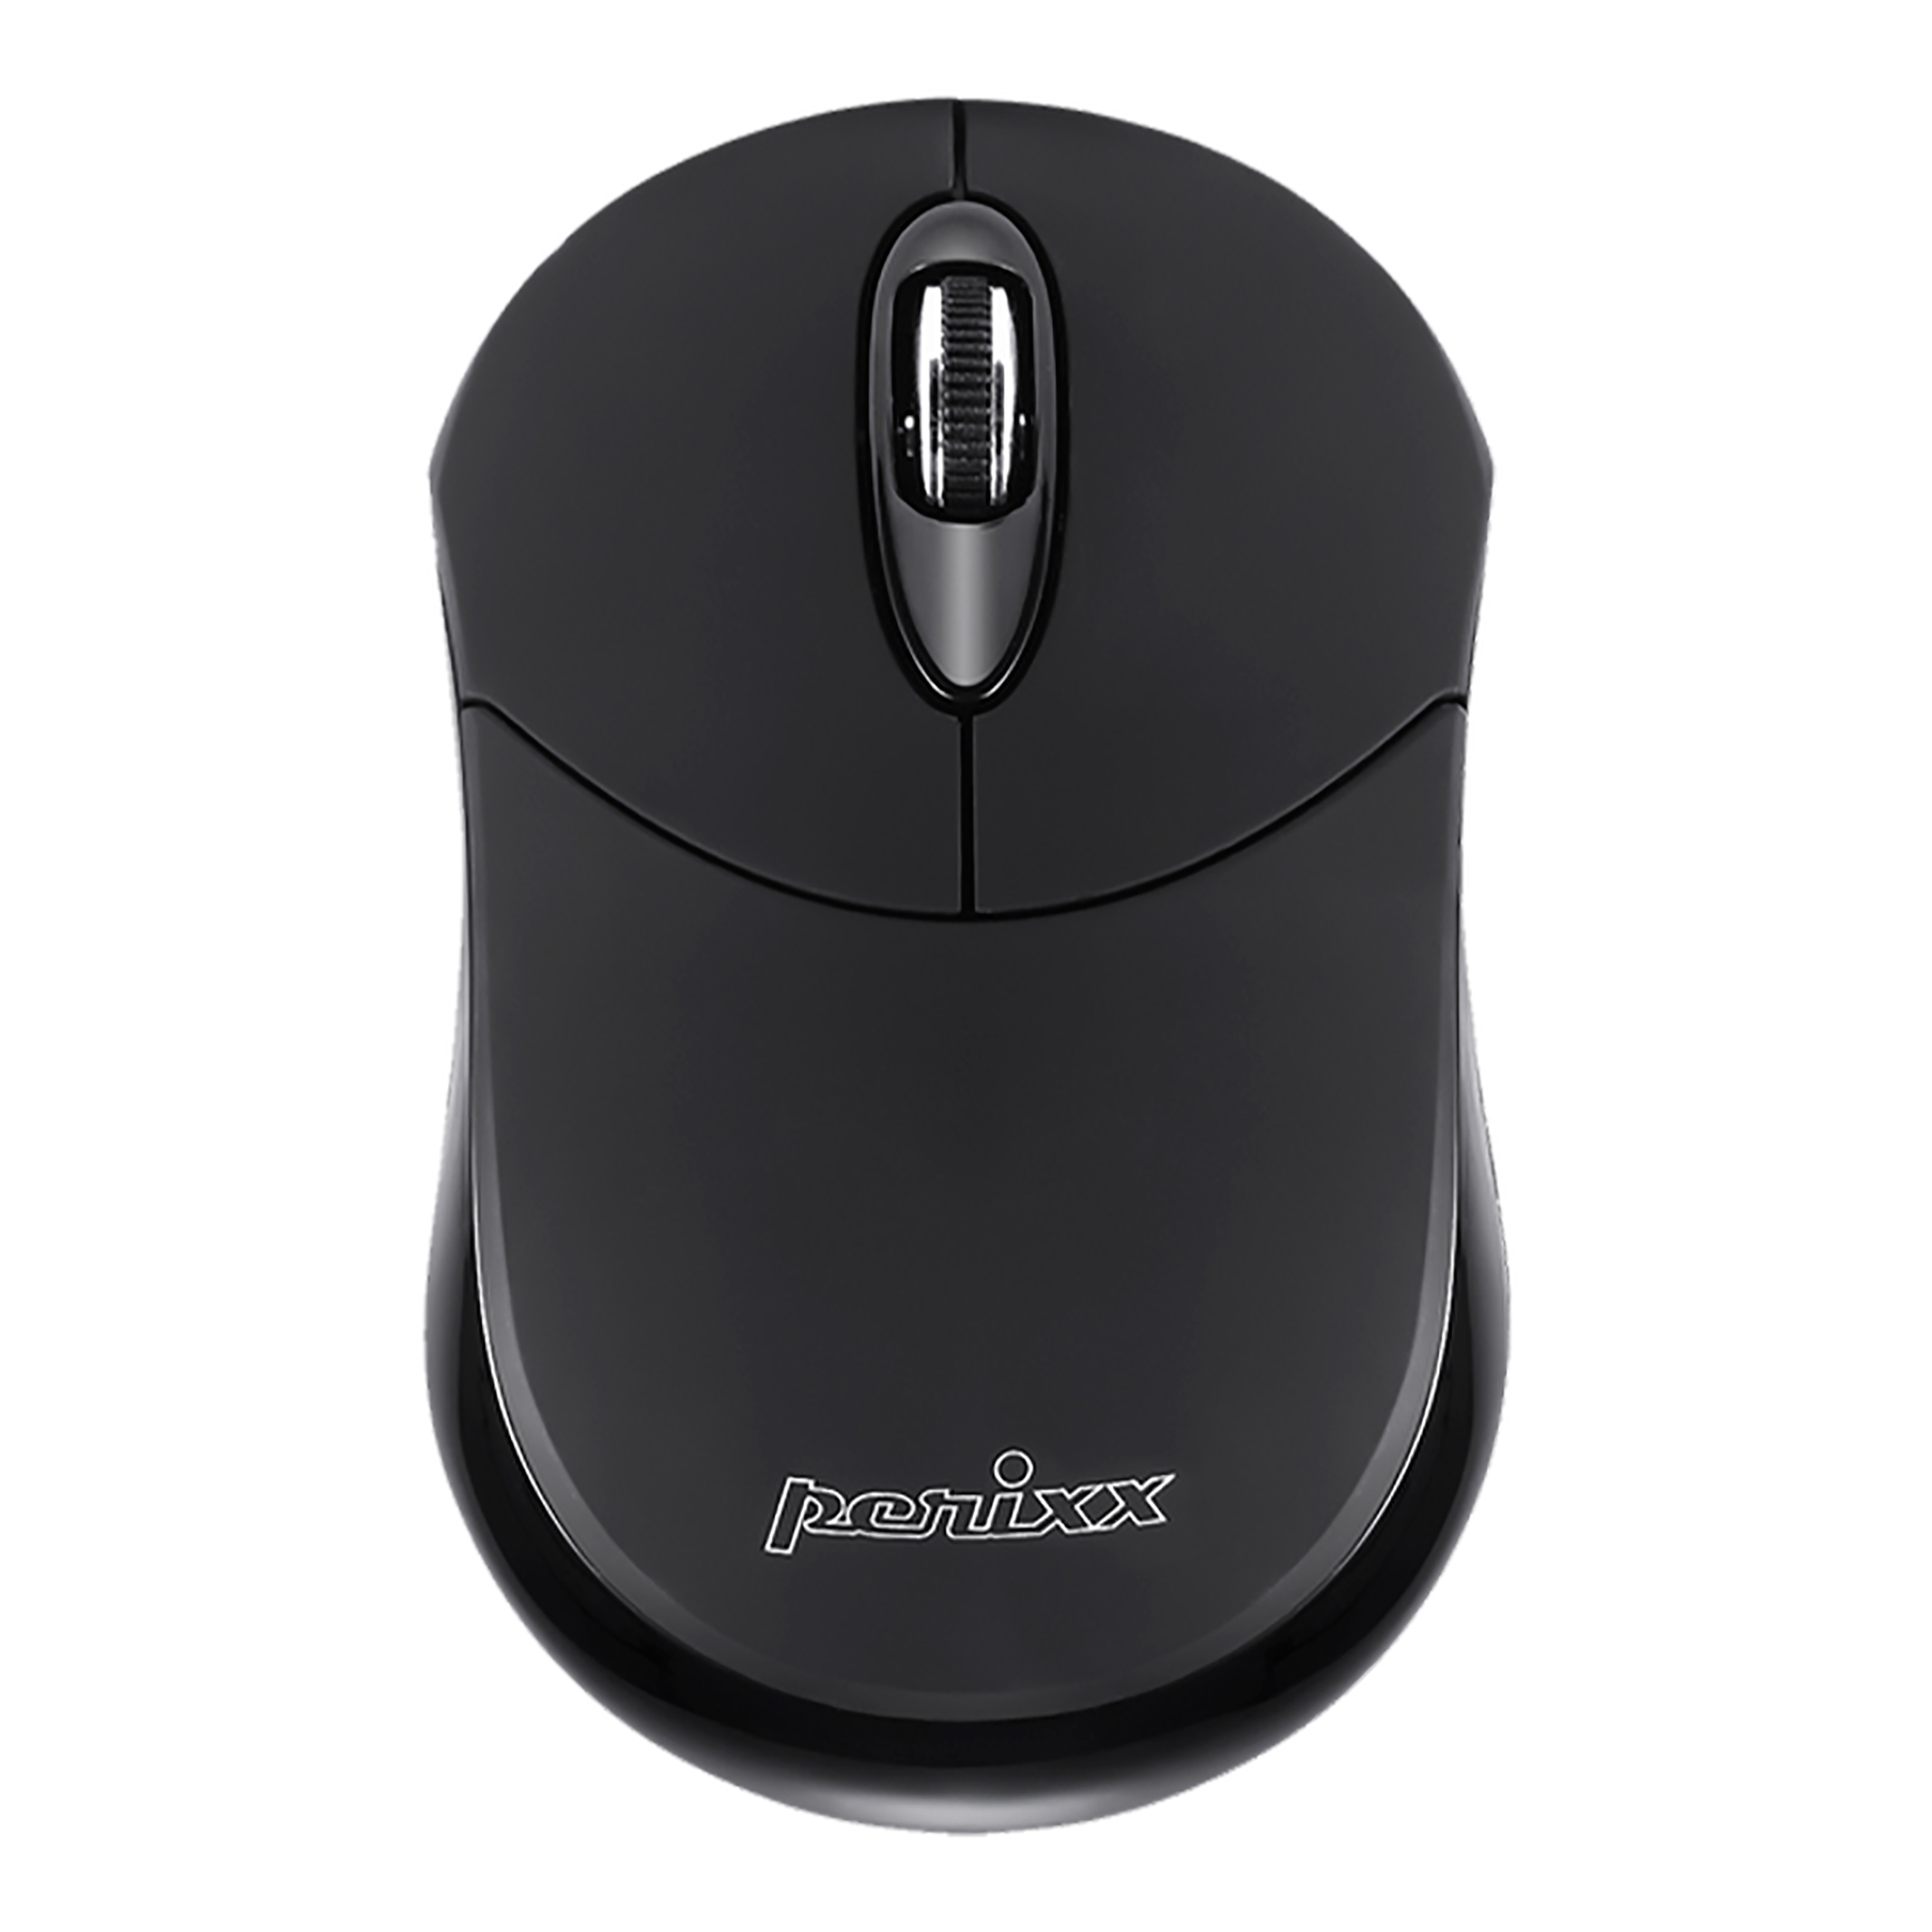 Mini Mouse Ambidiestro Inalmbrico Perixx 802 Bluetooth
